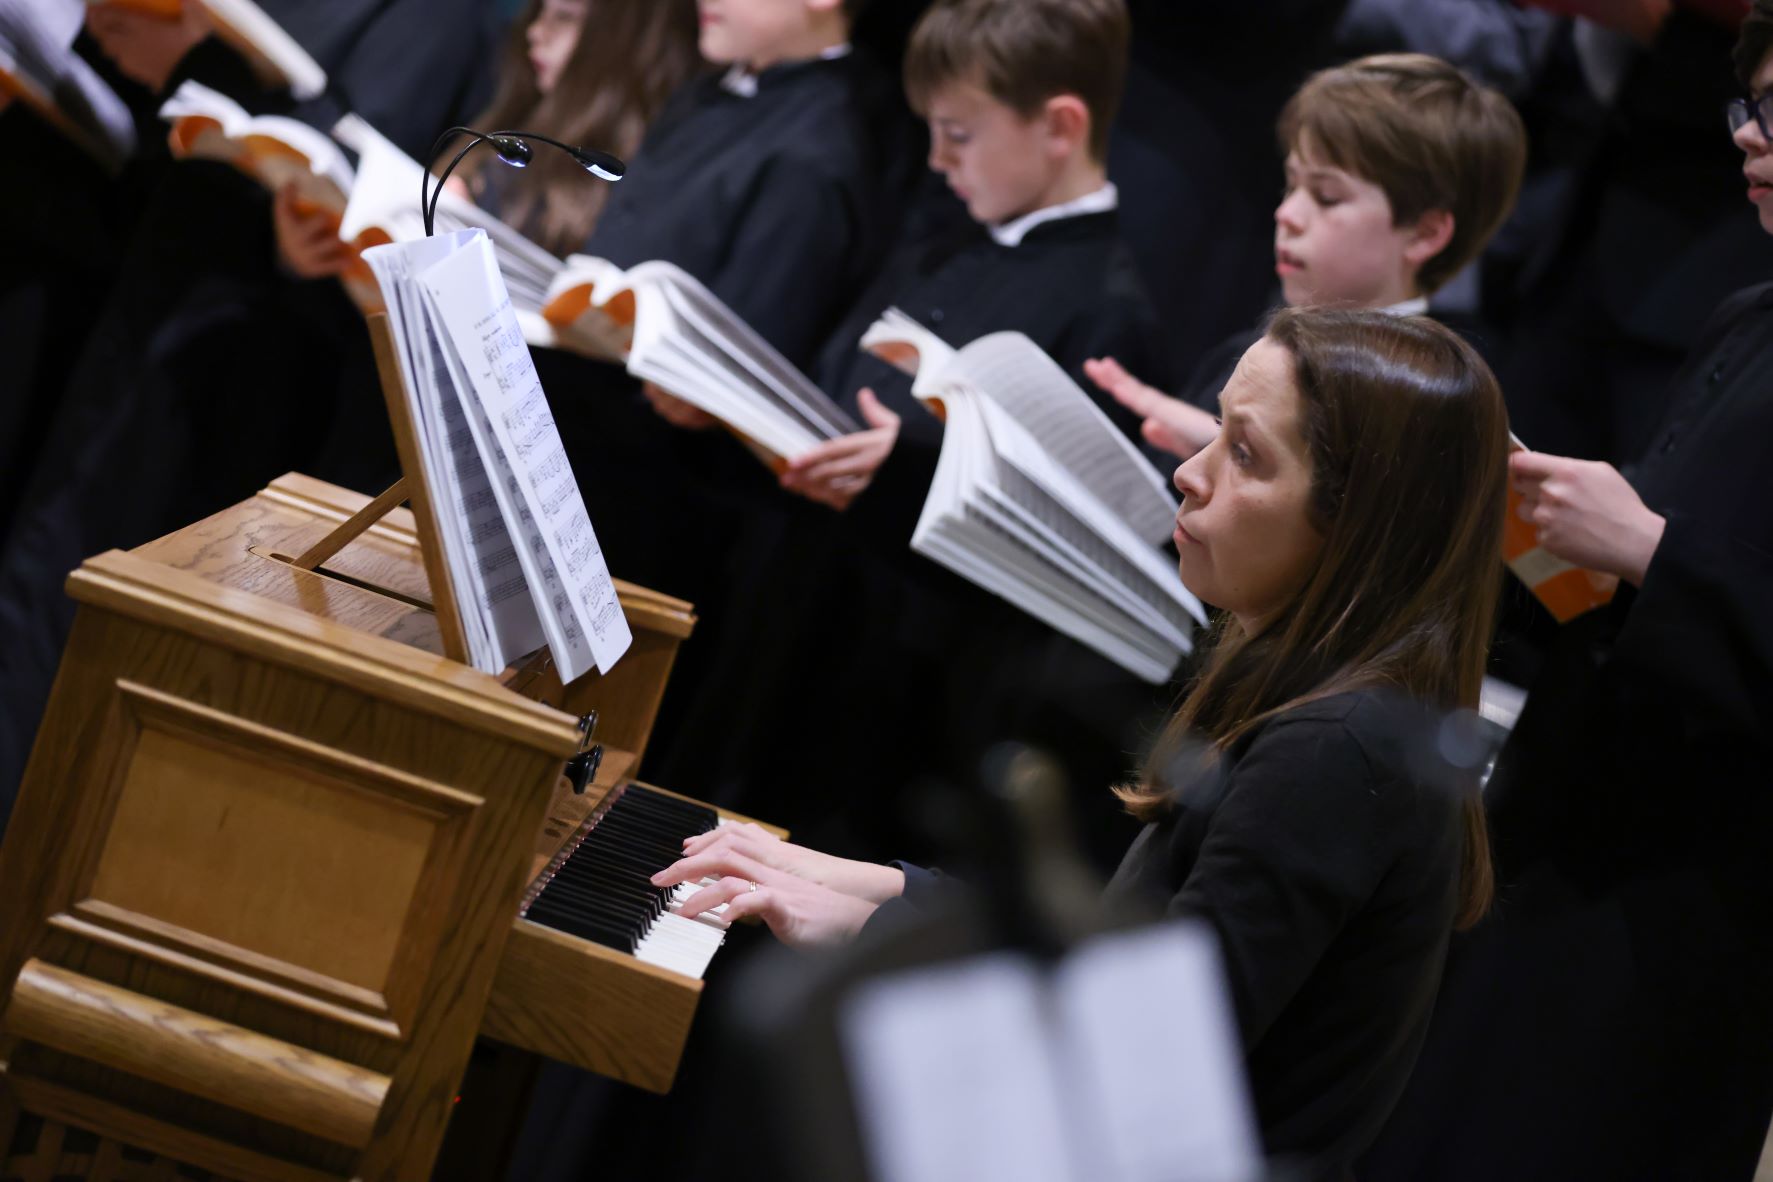 St Benedict's performs Handel's Messiah